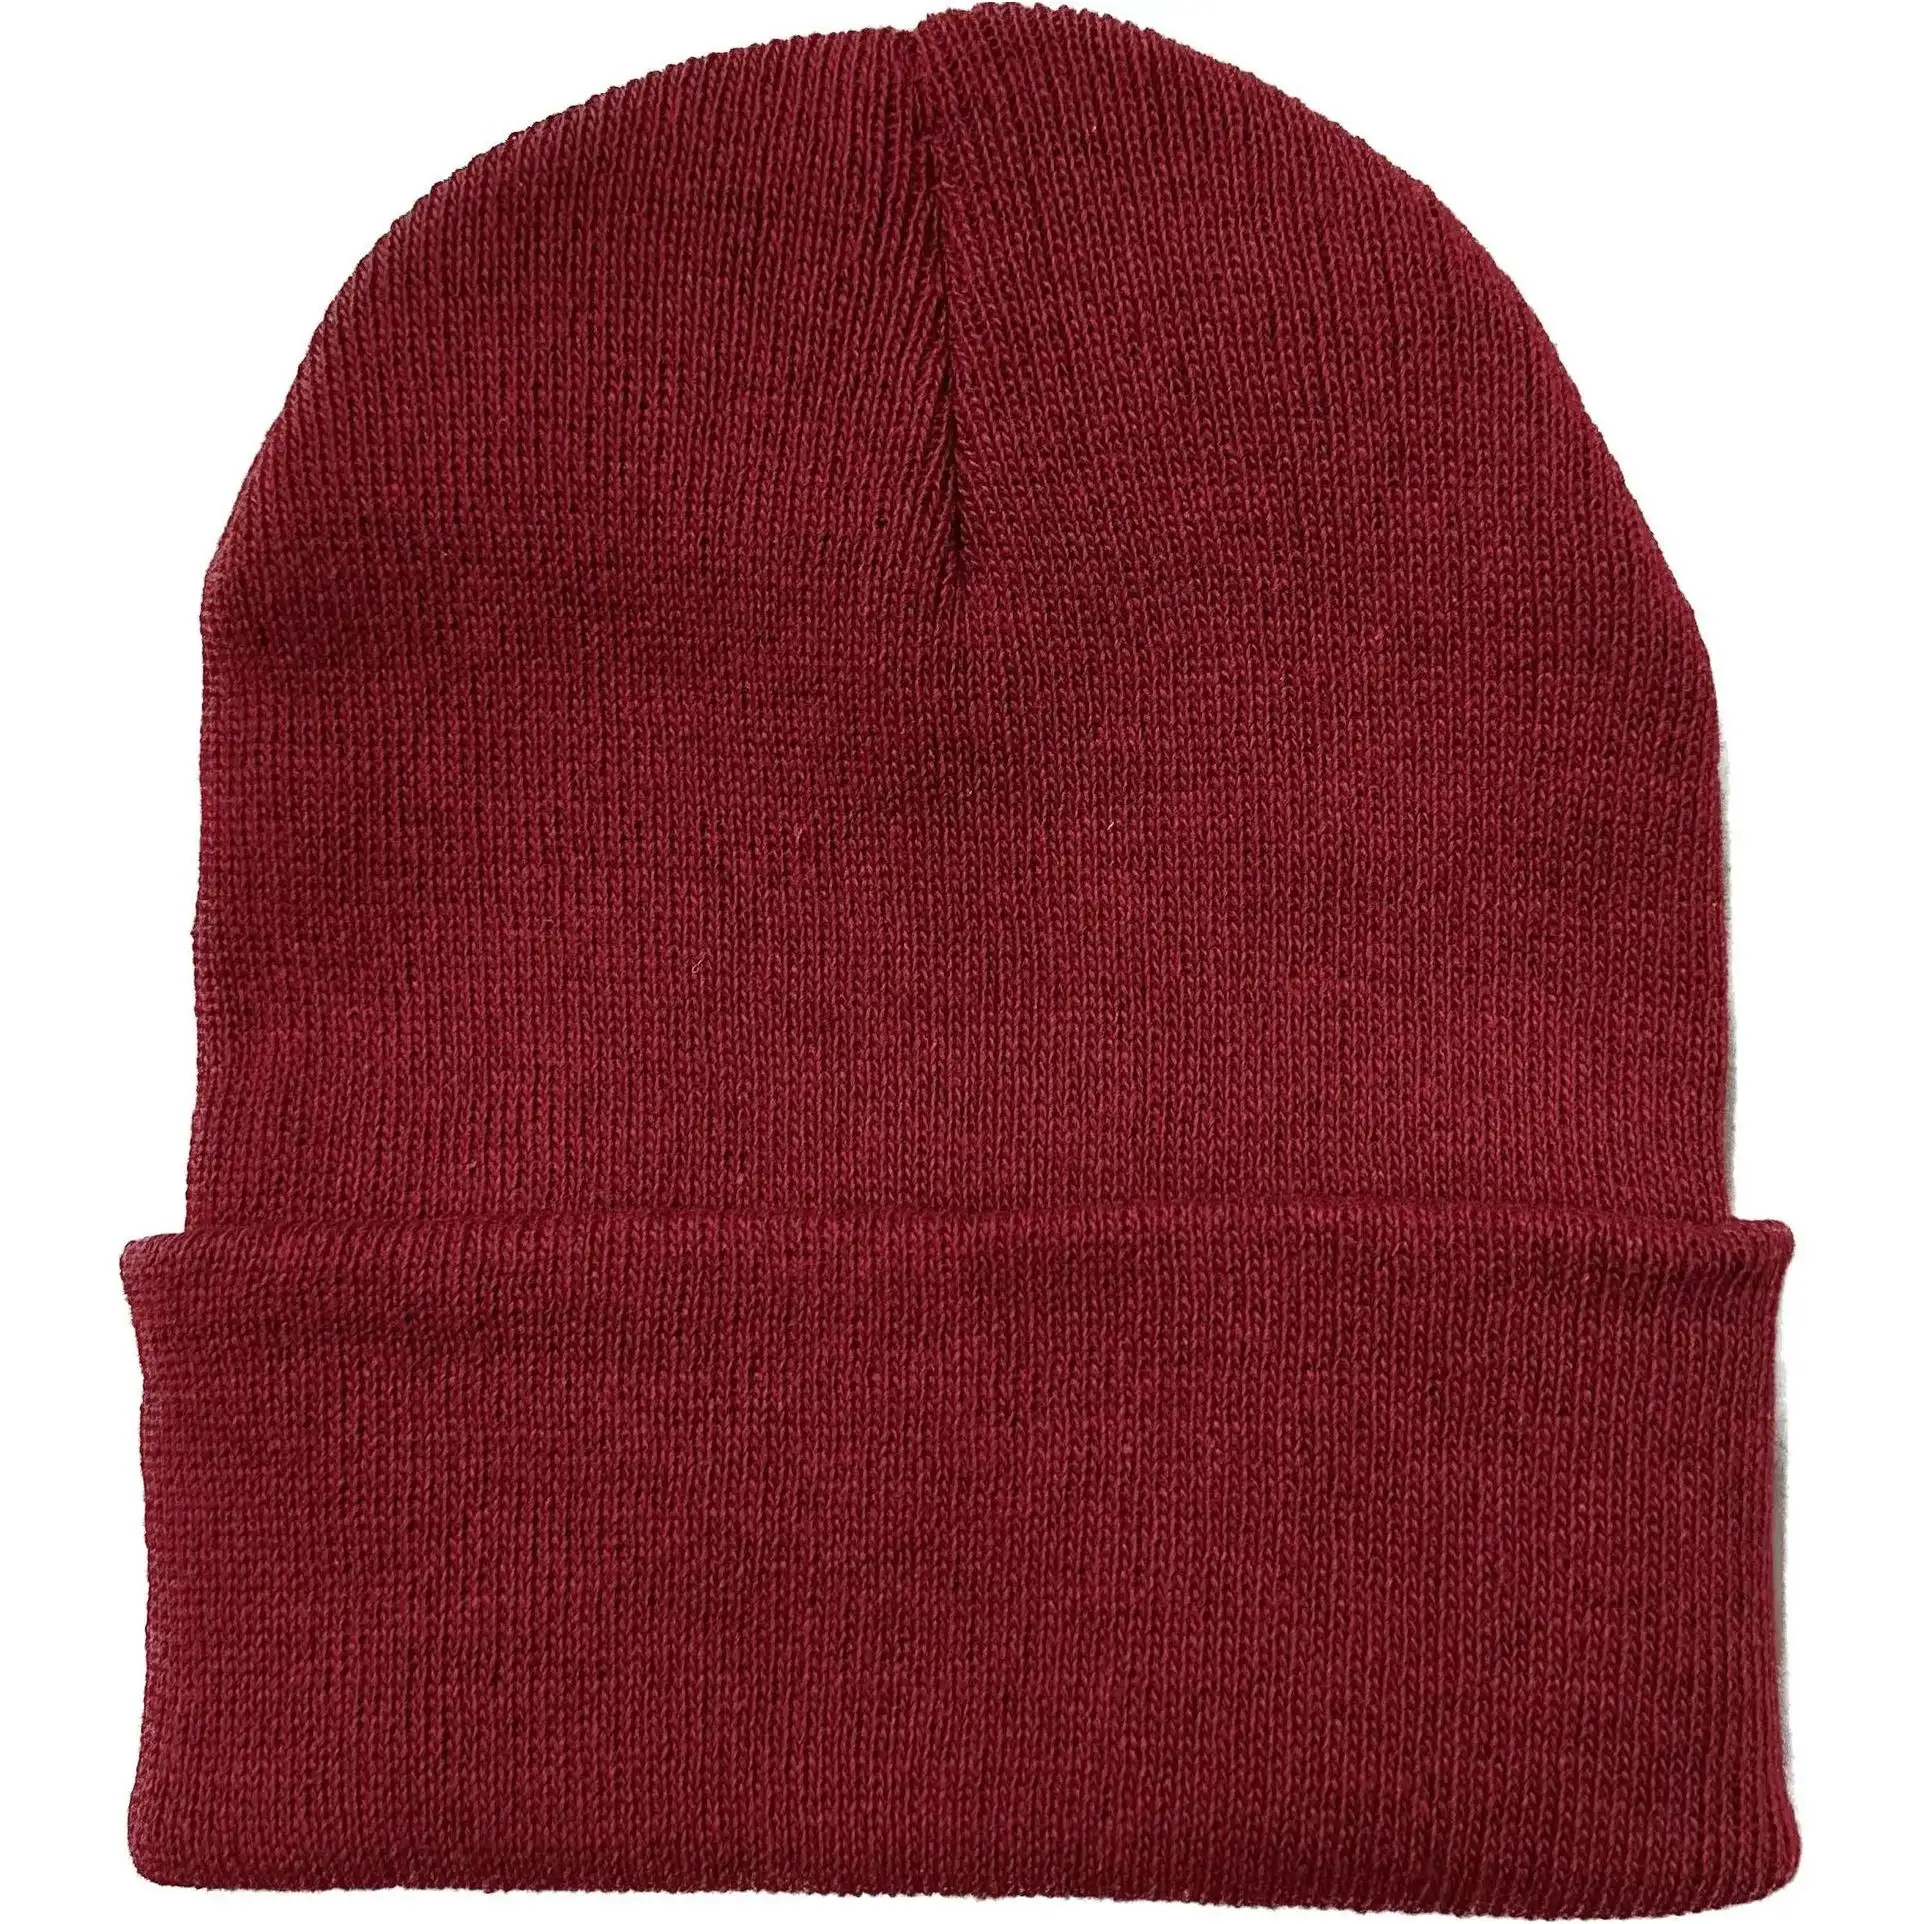 Bonnet tricoté de bonne qualité Bobble froid Offre Spéciale seau laine Ski nouveautés hommes et femmes masque Bluetooth chapeau tricoté intégral